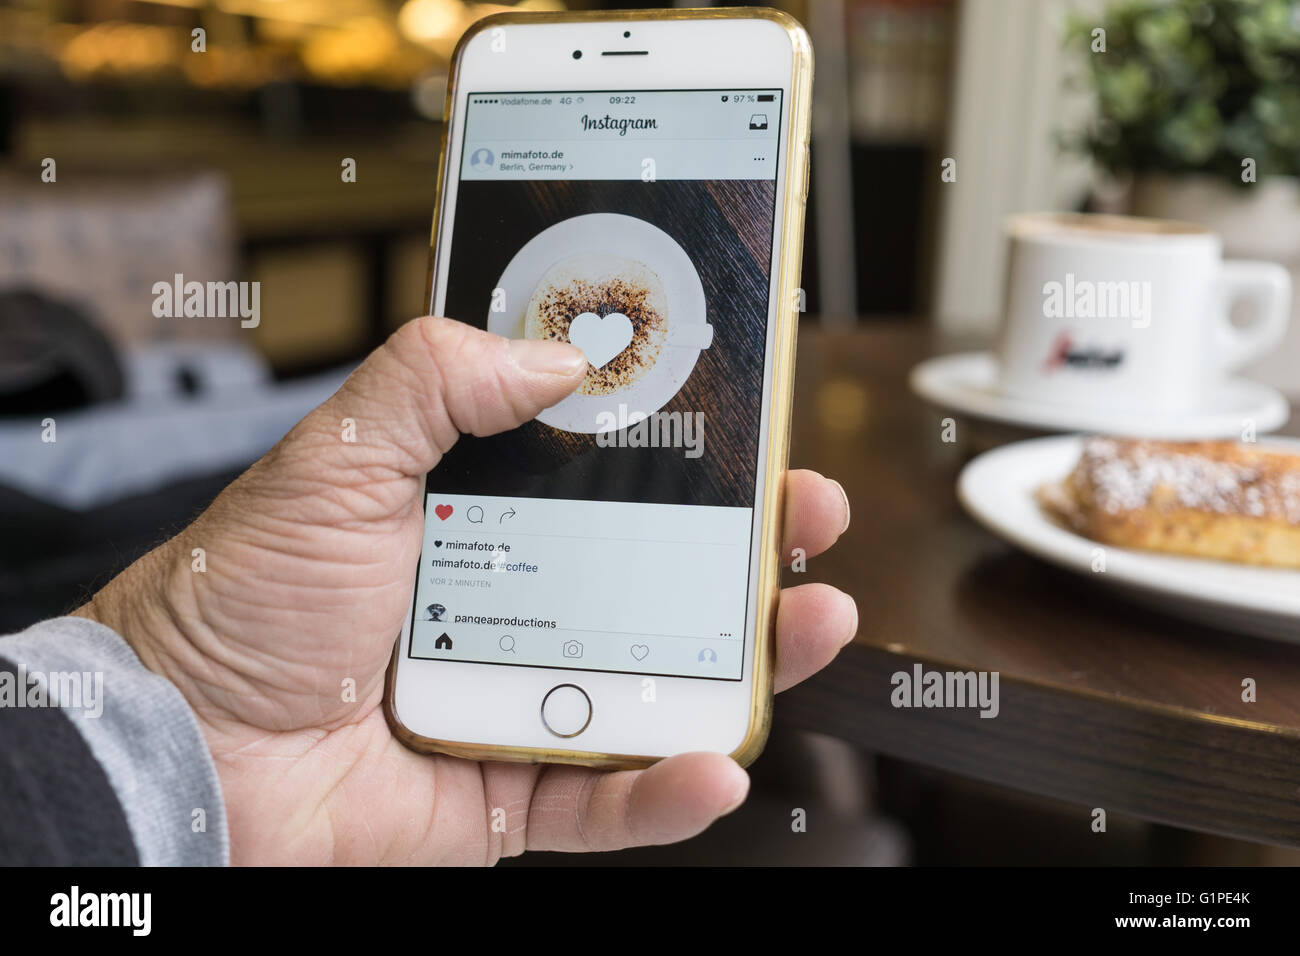 Berlino, Germania - 17 Maggio 2016: l'uomo utilizzando il nuovo design Instagram app sul suo iPhone 6 Plus. Foto Stock